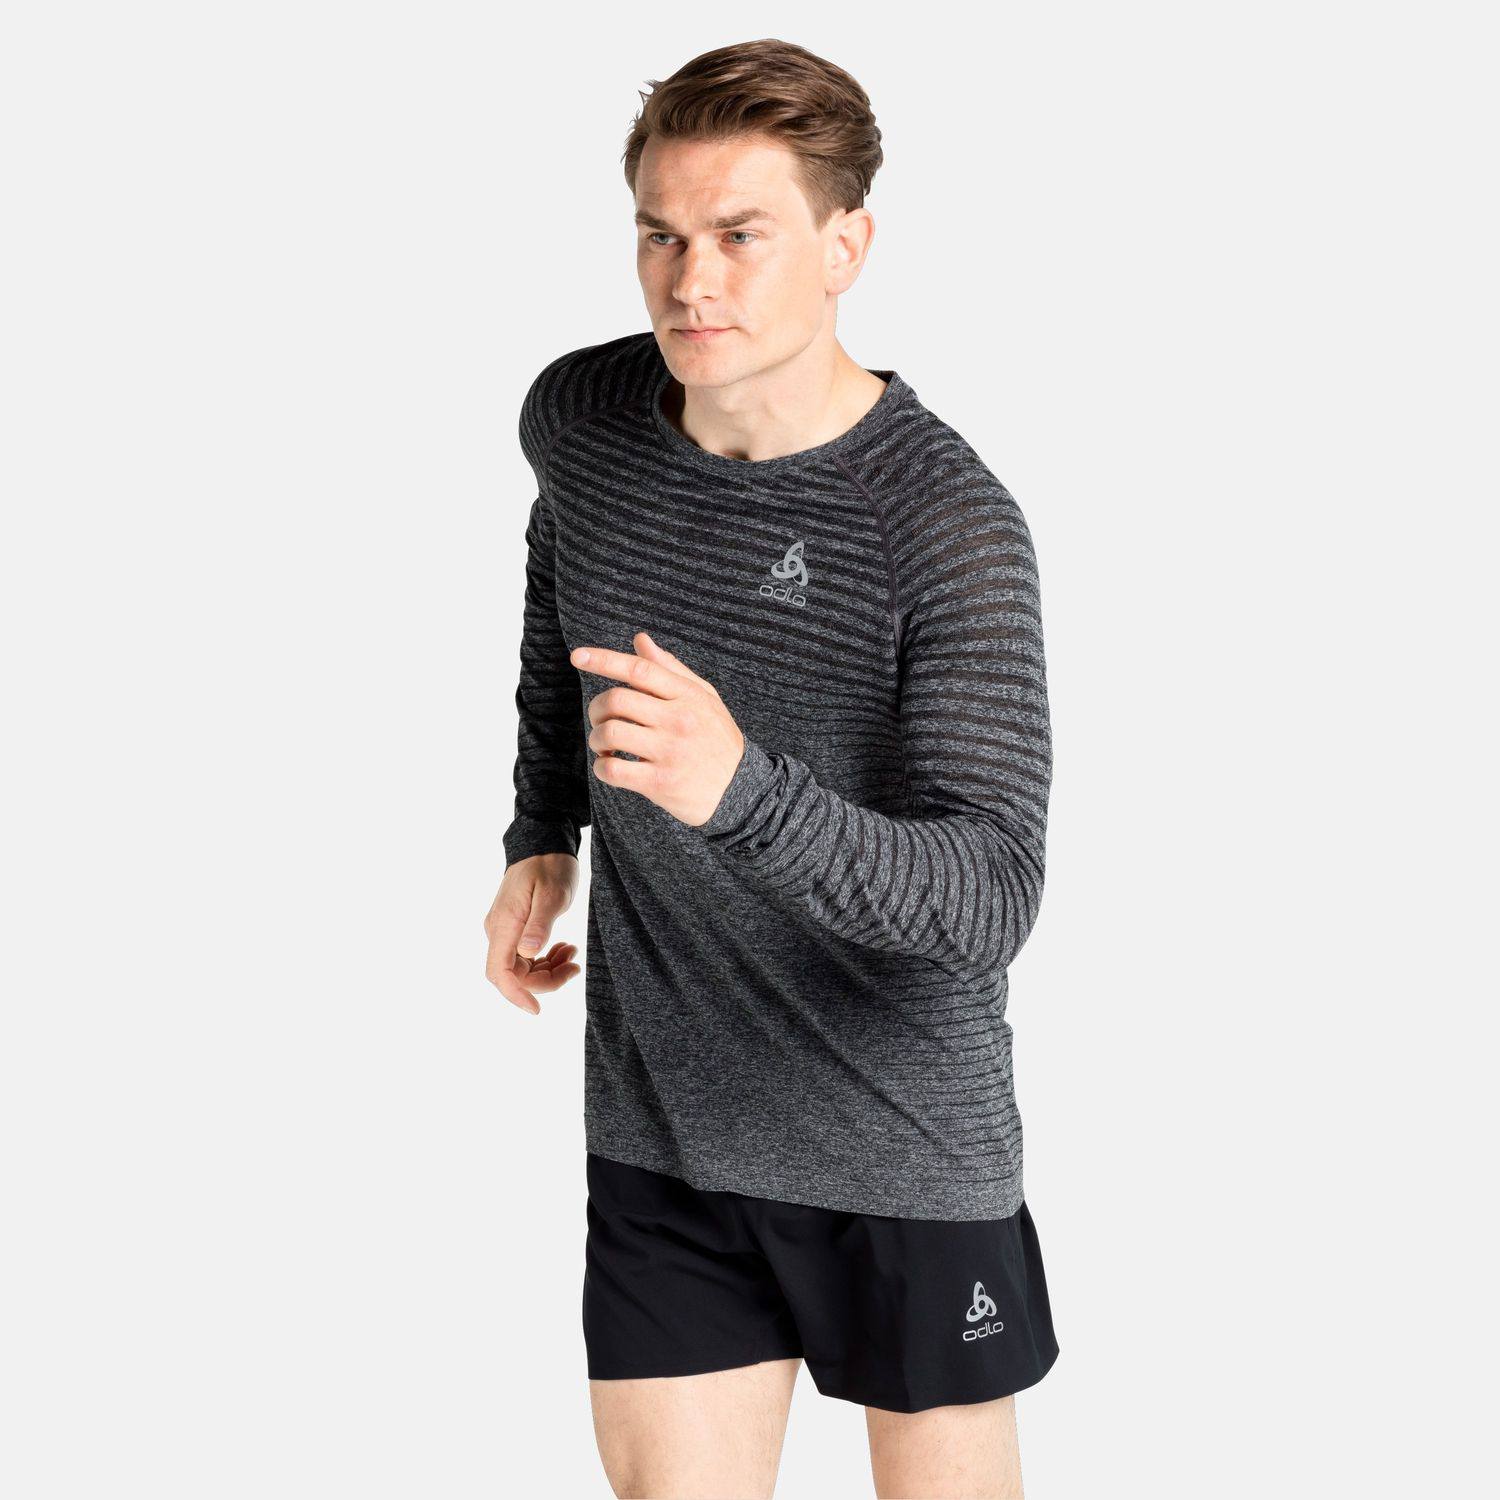 Men’s Essential Seamless Long-Sleeve Running Shirt Grey S